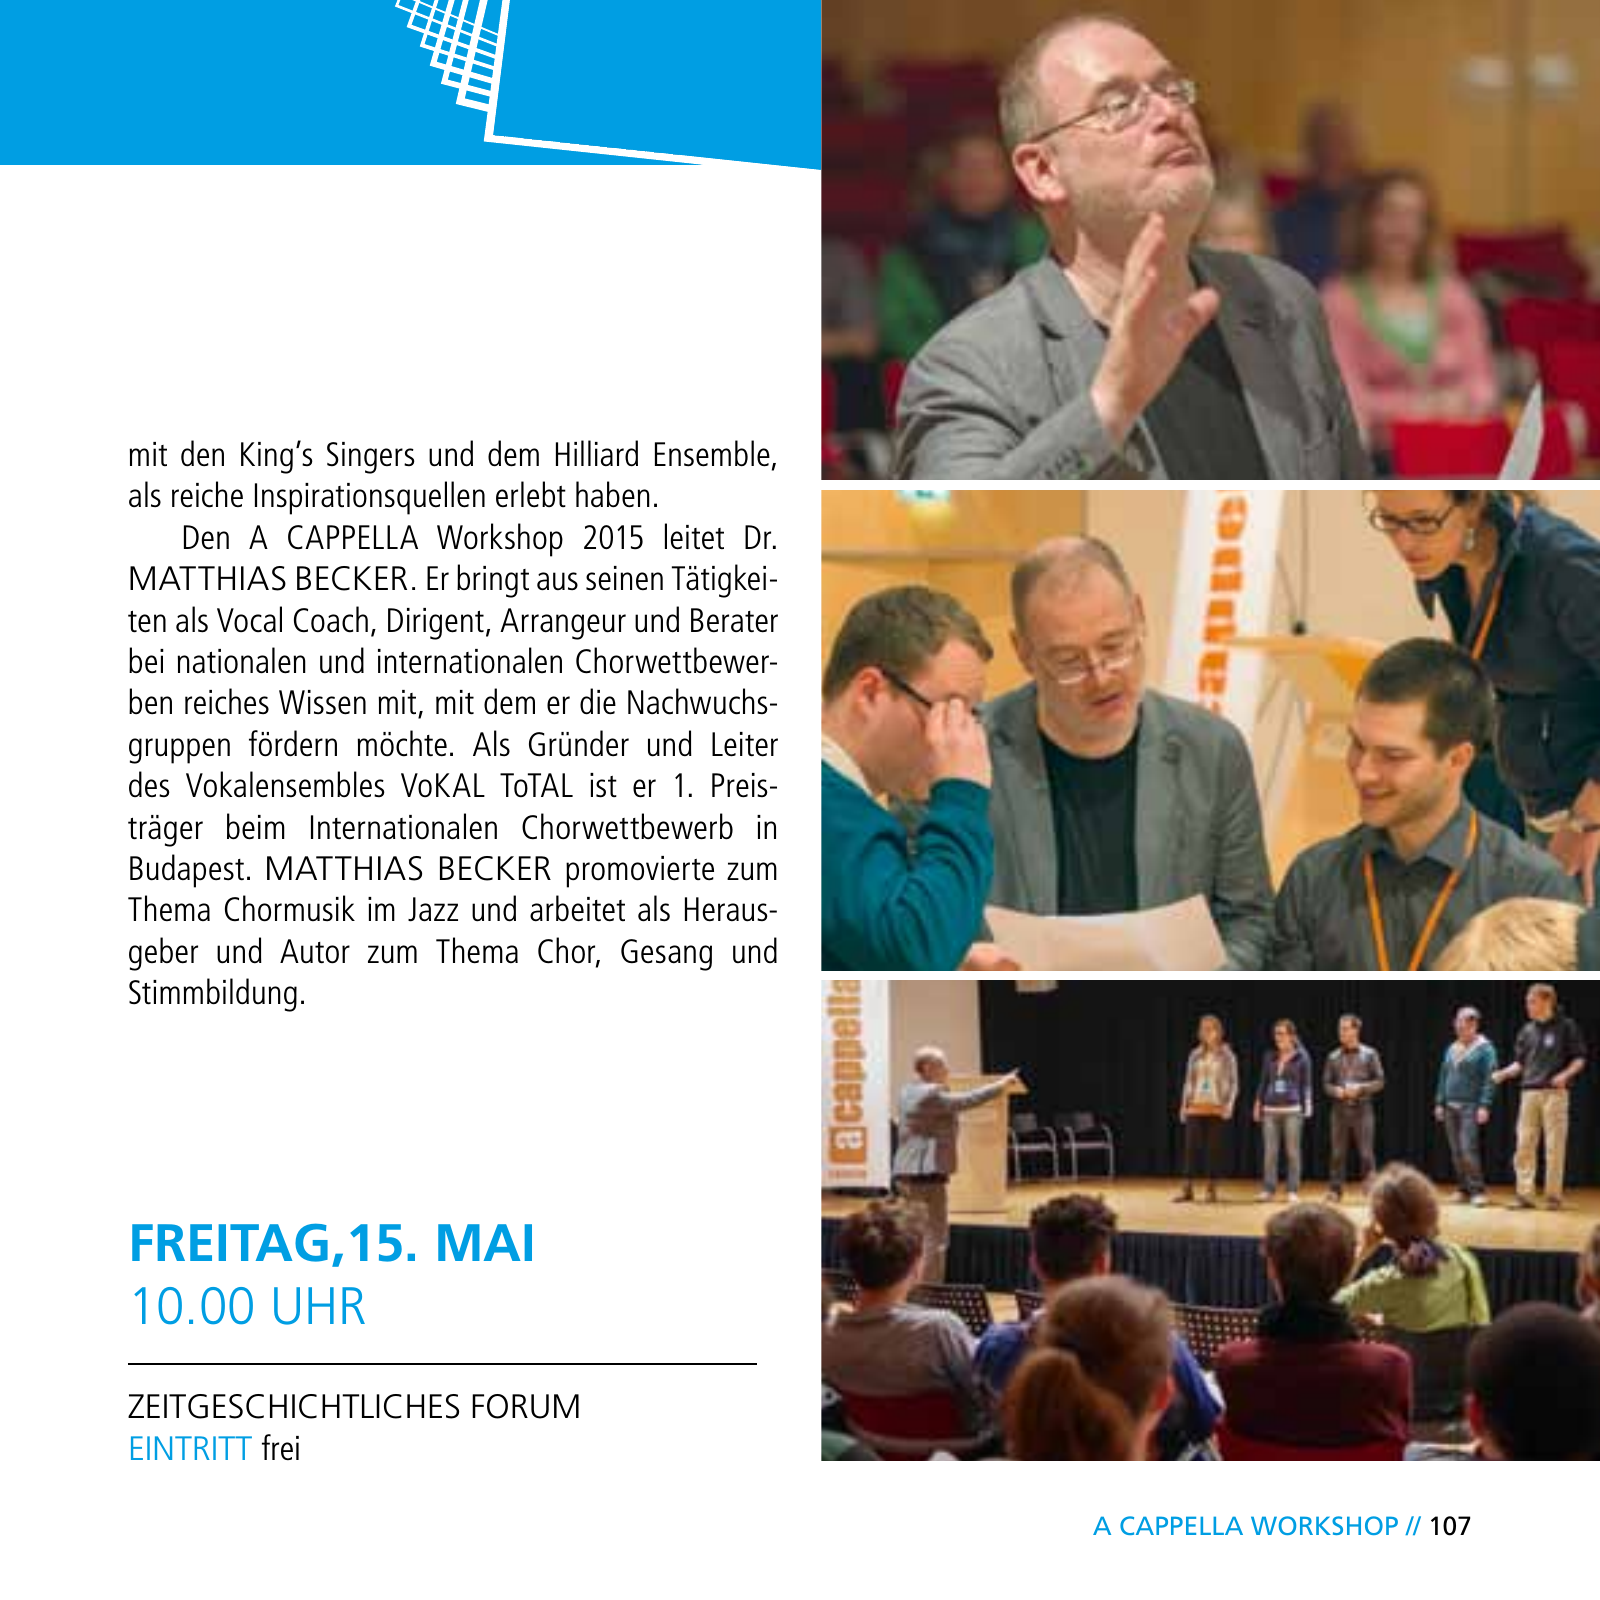 Vorschau E-Paper Festival a cappella 2015 Seite 109